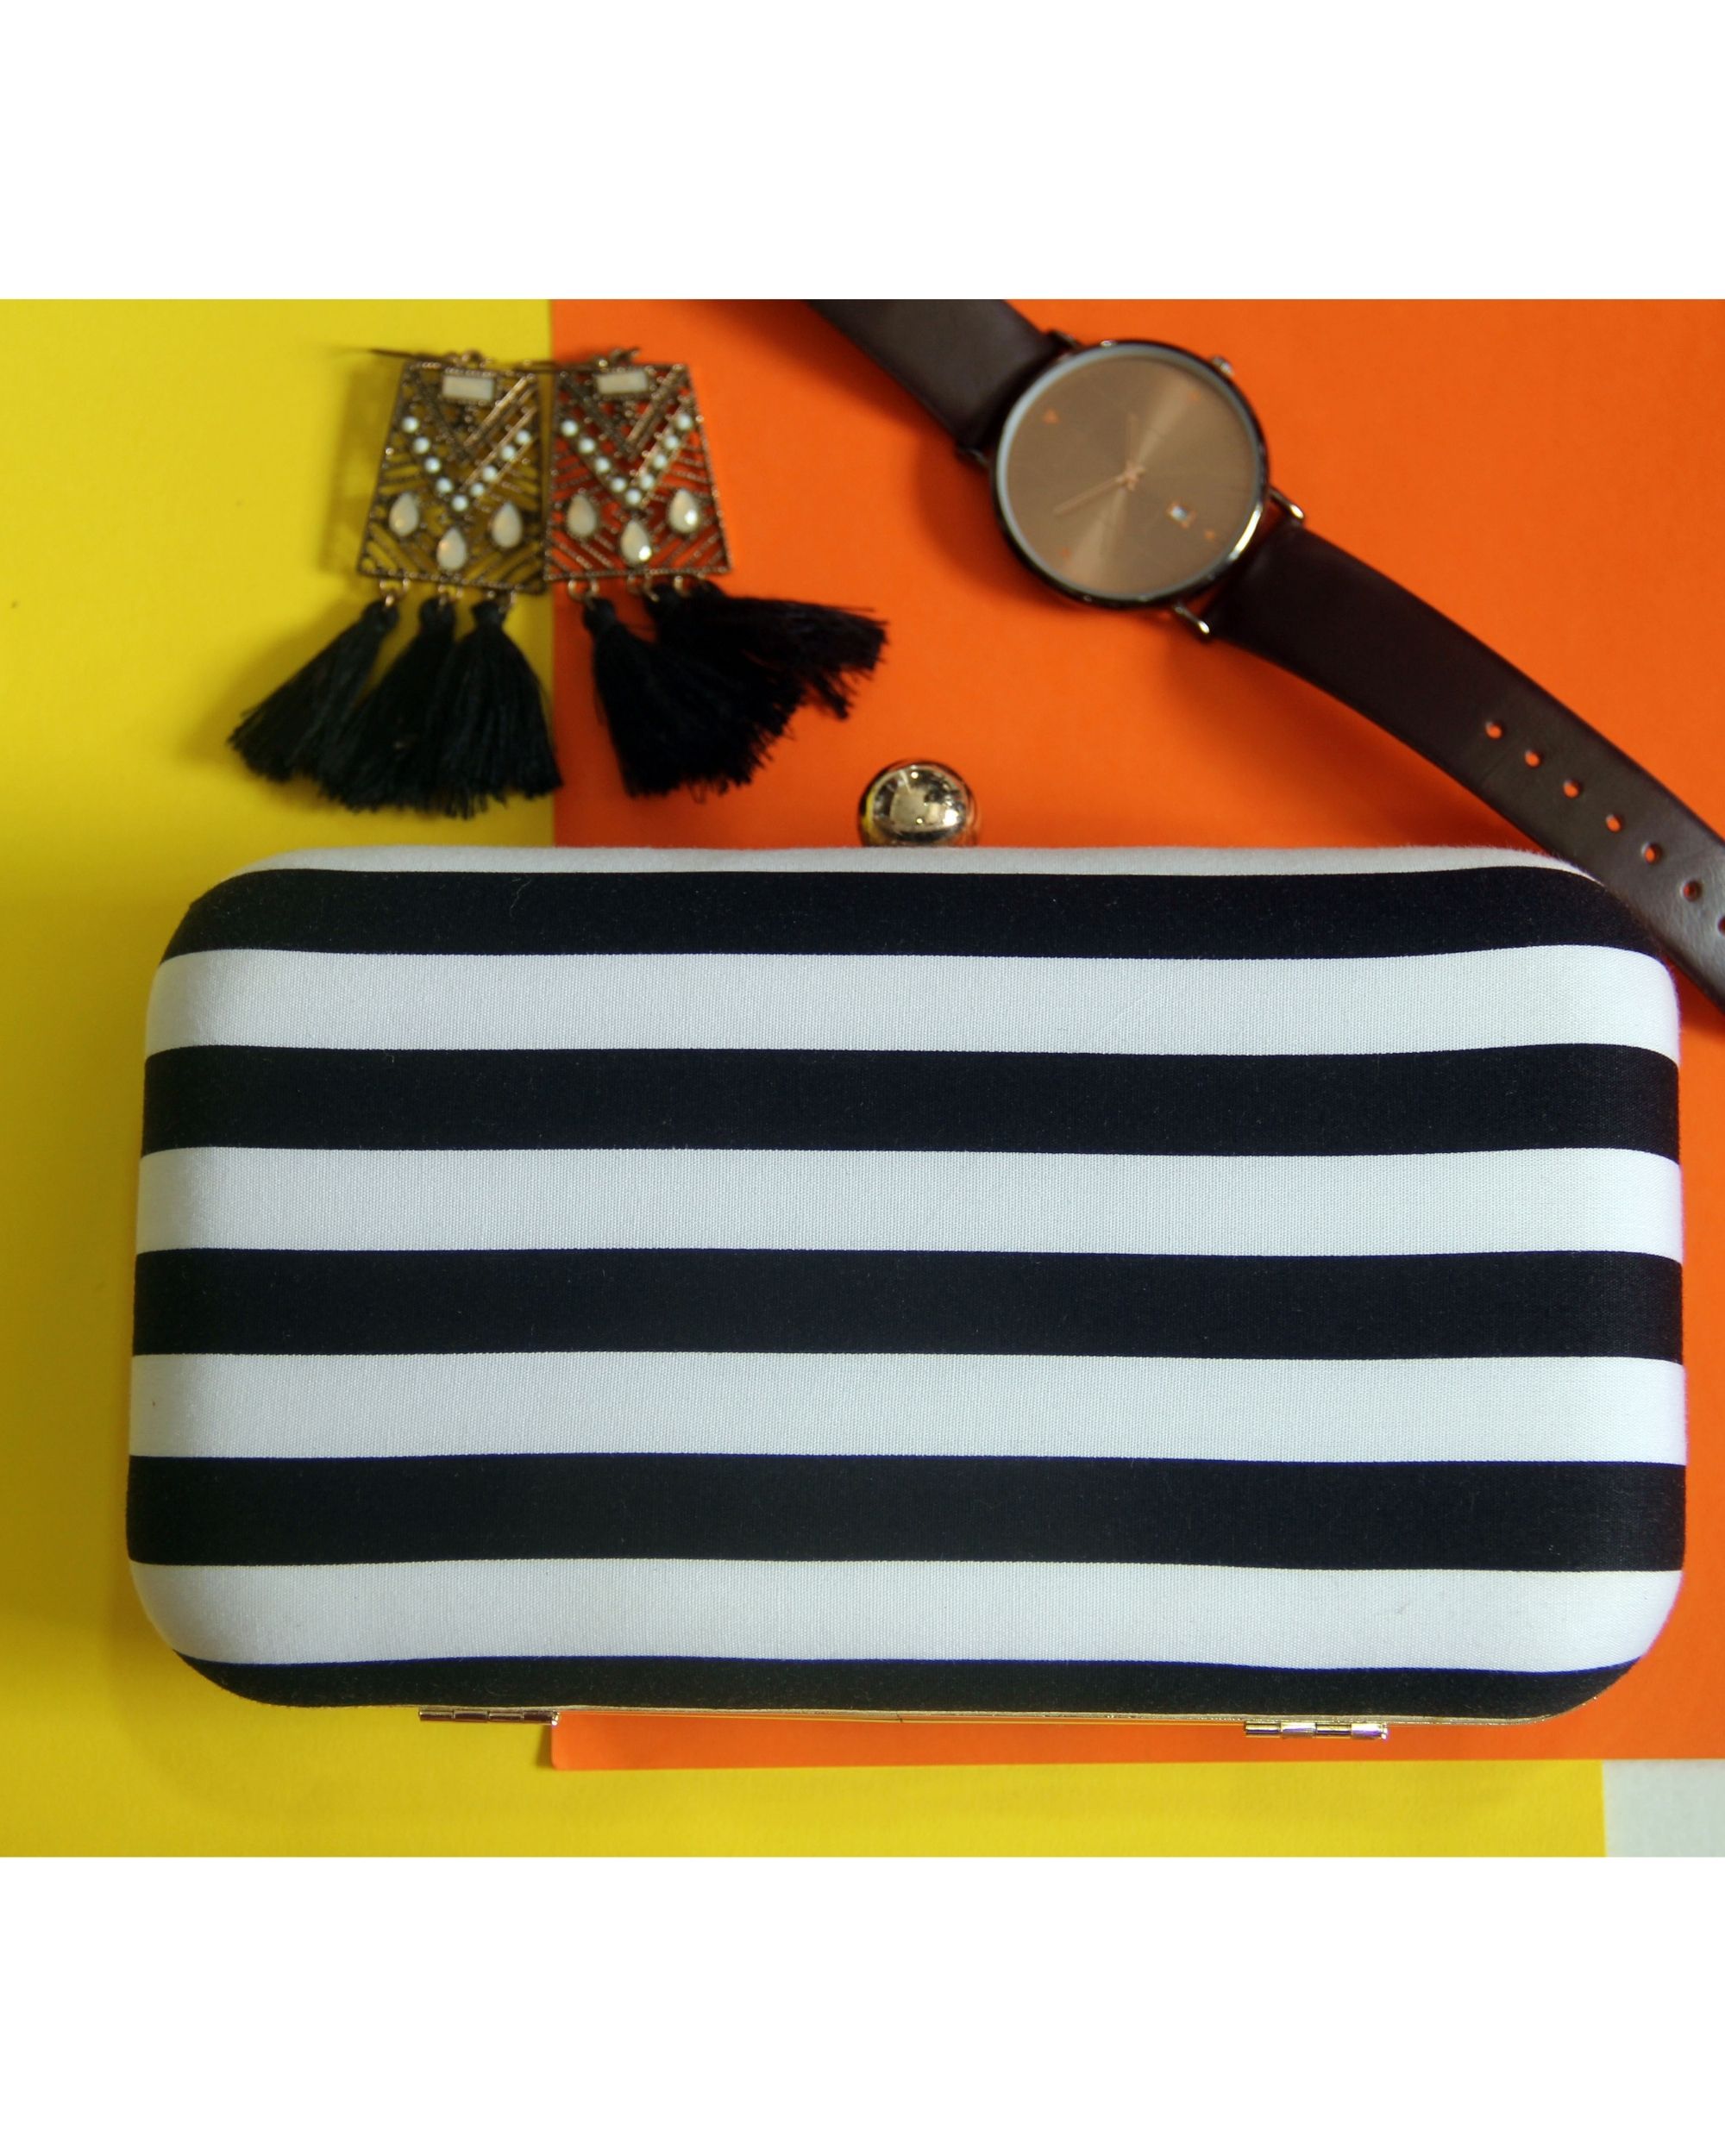 Black & white striped clutch bag by Assortia